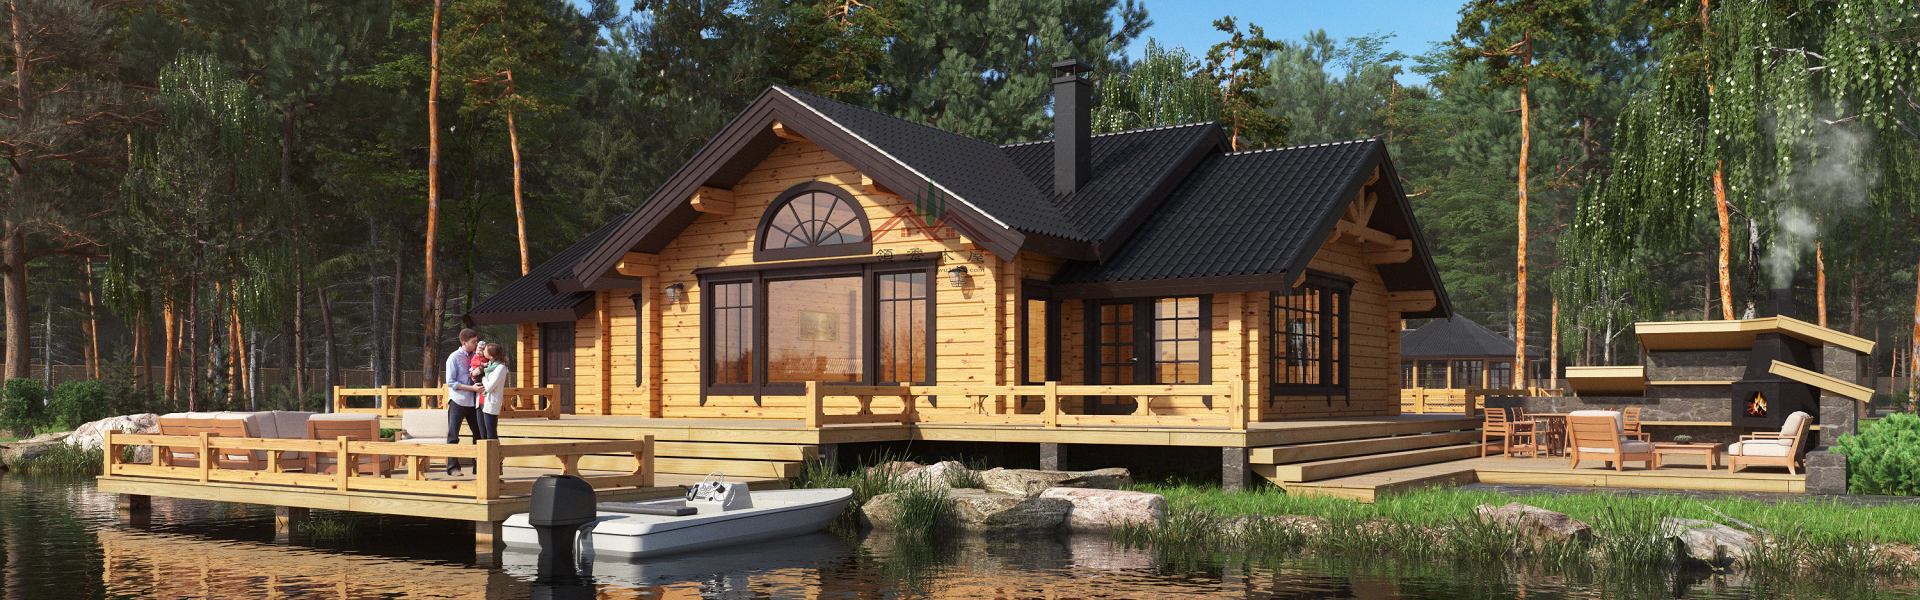 親水木別墅整體設計方案